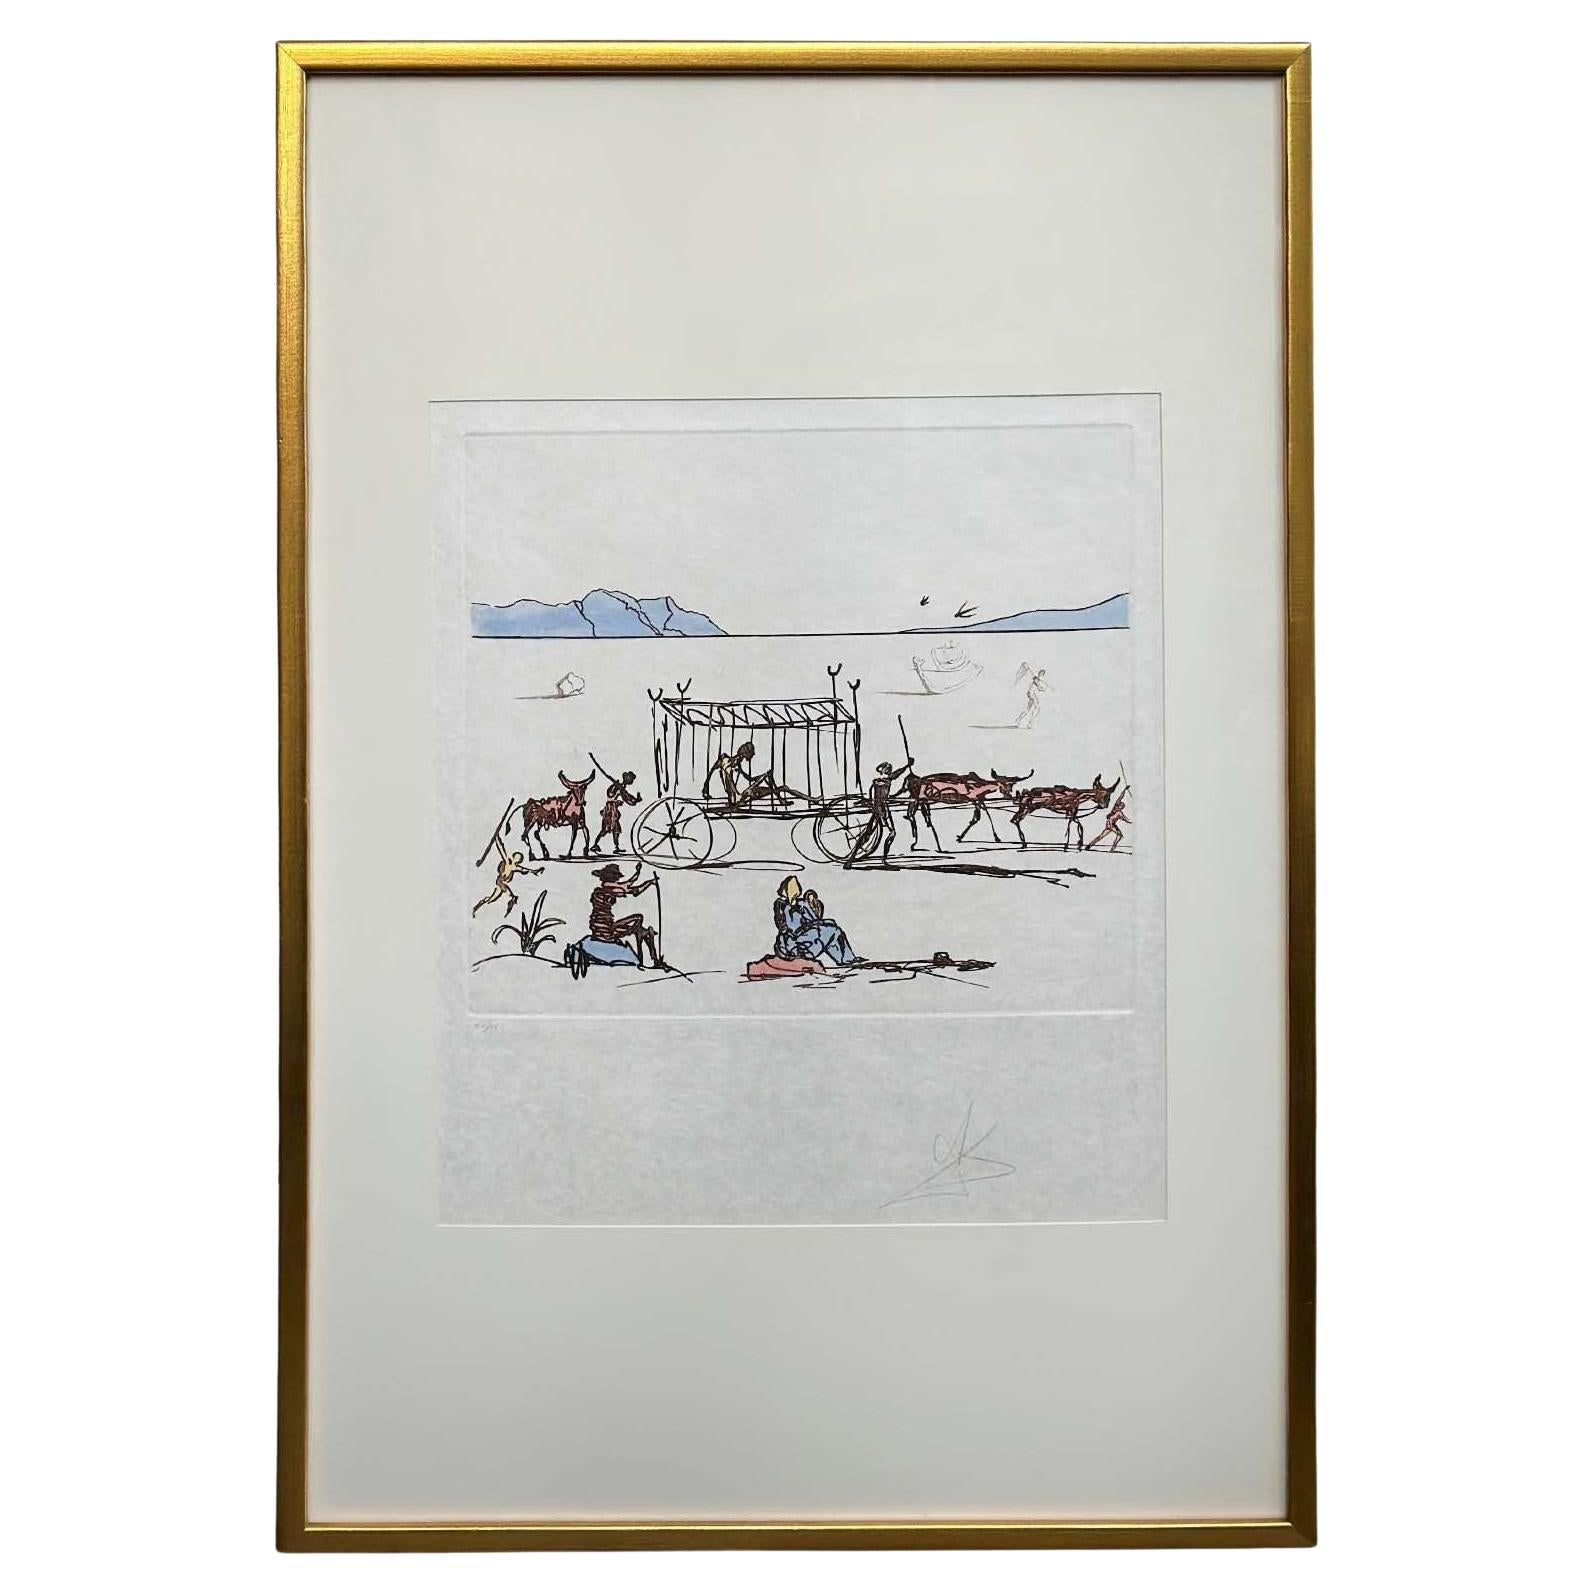 Framed Etching Aquatint "Judgement" by Salvador Dalí